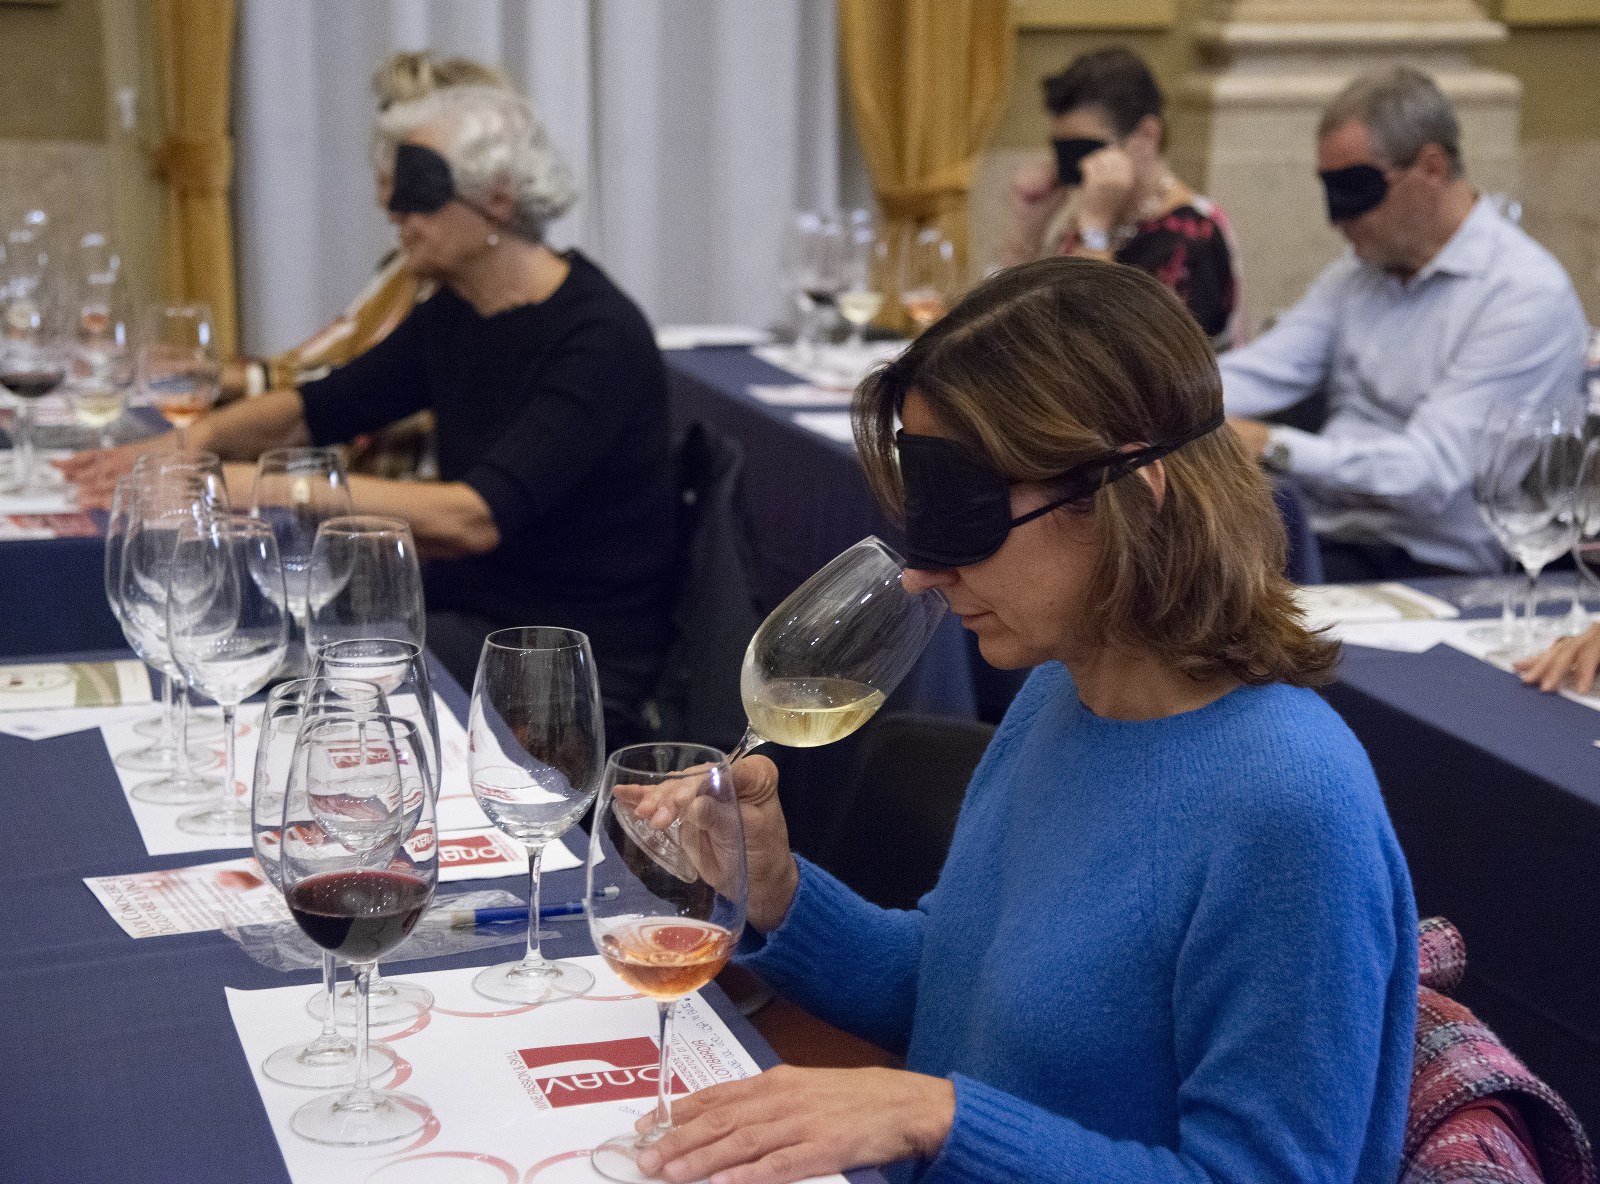 Degustazione “Speciale e diversa”, ad occhi chiusi. Istituto dei Ciechi di Milano e Donne del Vino della Lombardia con Onav, 4 ottobre 2021